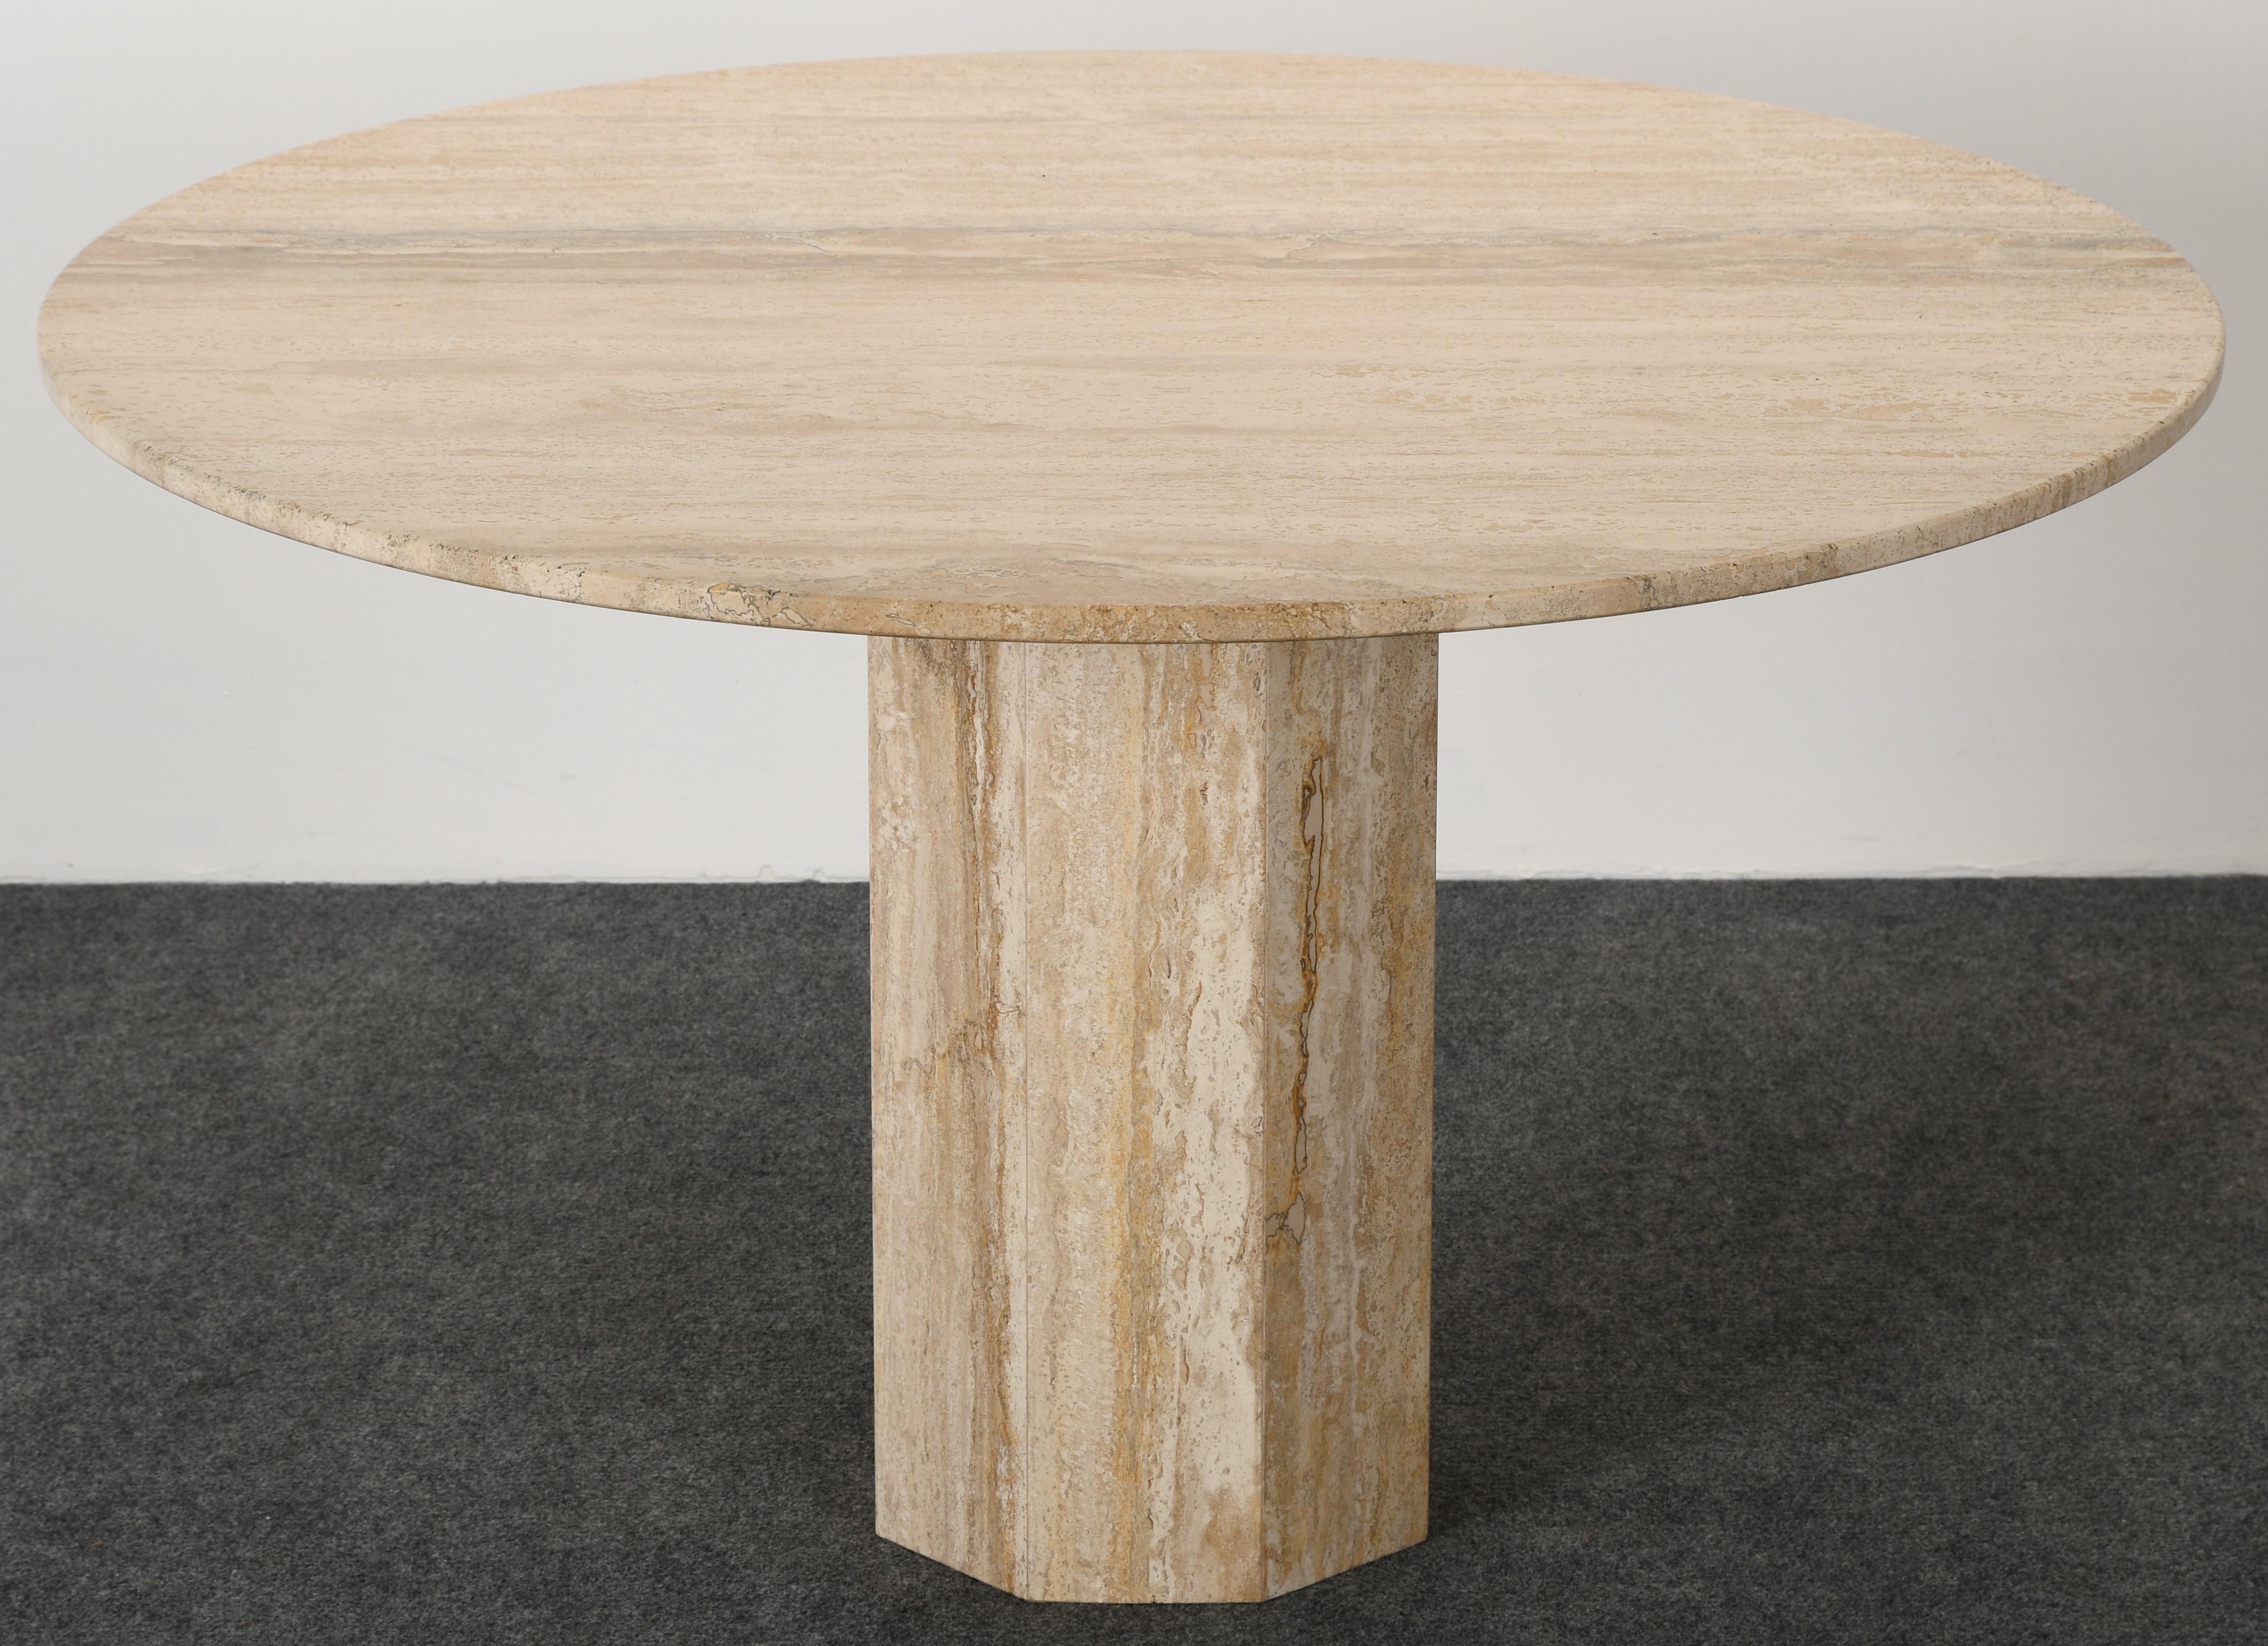 roche bobois travertine table